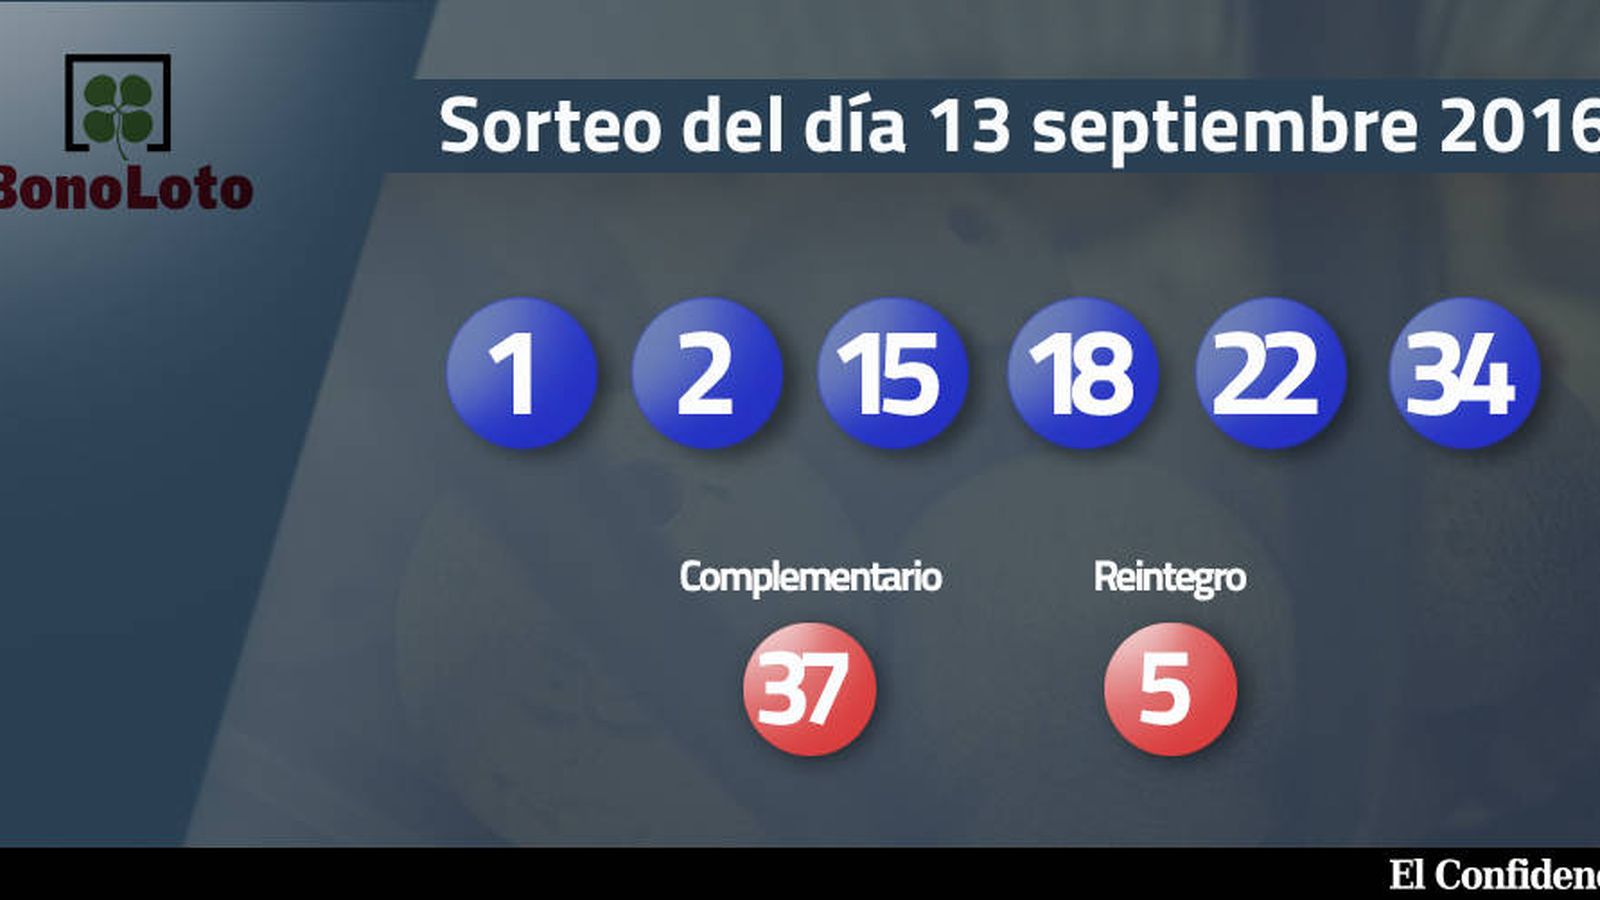 Foto: Resultados del sorteo de la Bonoloto del 13 septiembre 2016 (EC)